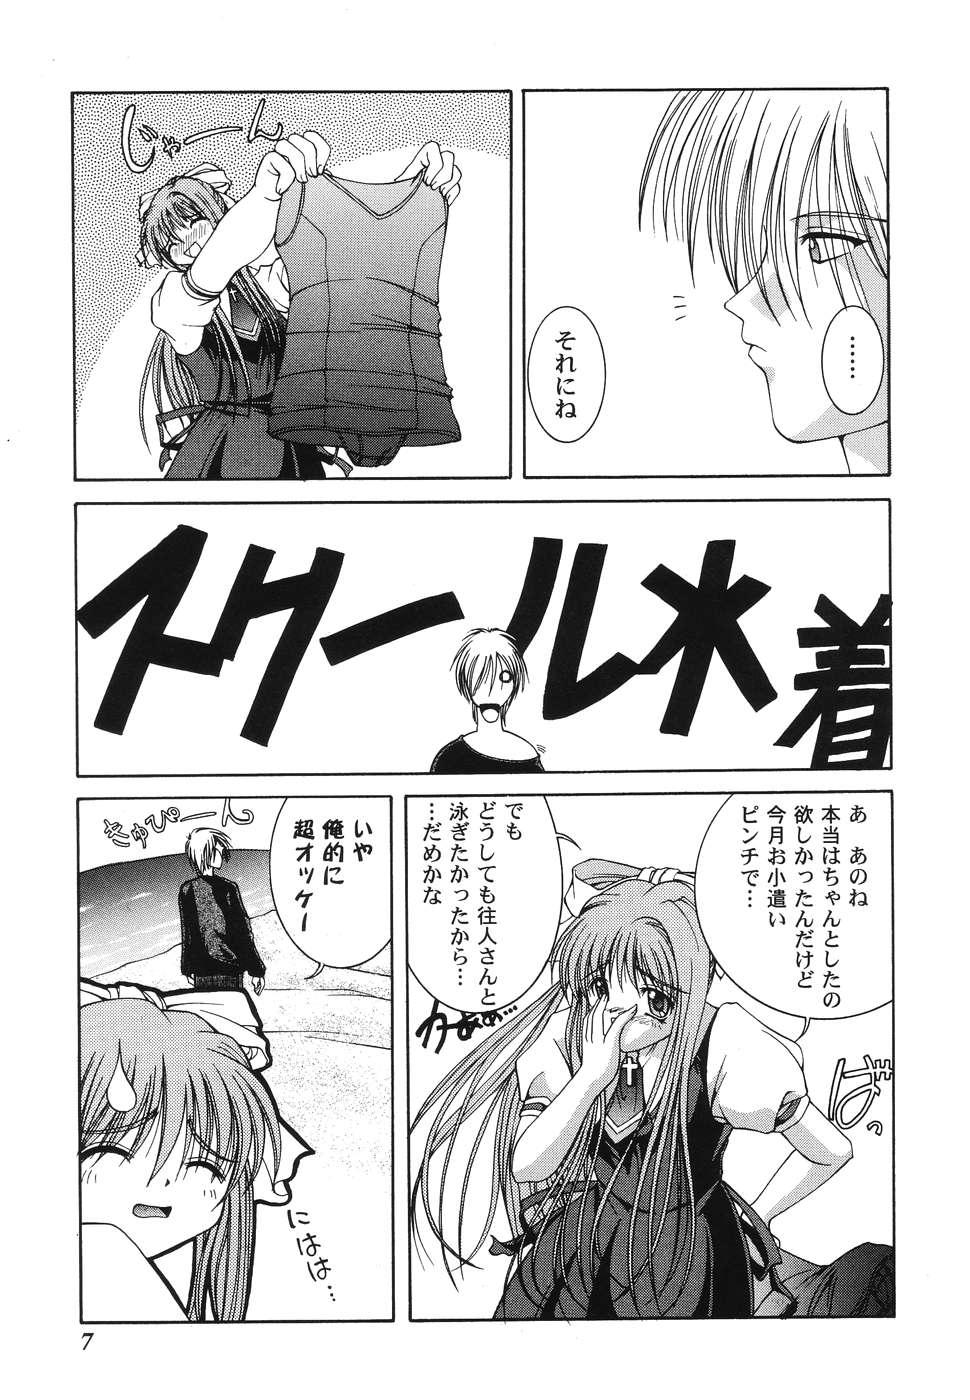 Gay Friend Himitsu no Serenade 1 - Kanon Air Hole - Page 7